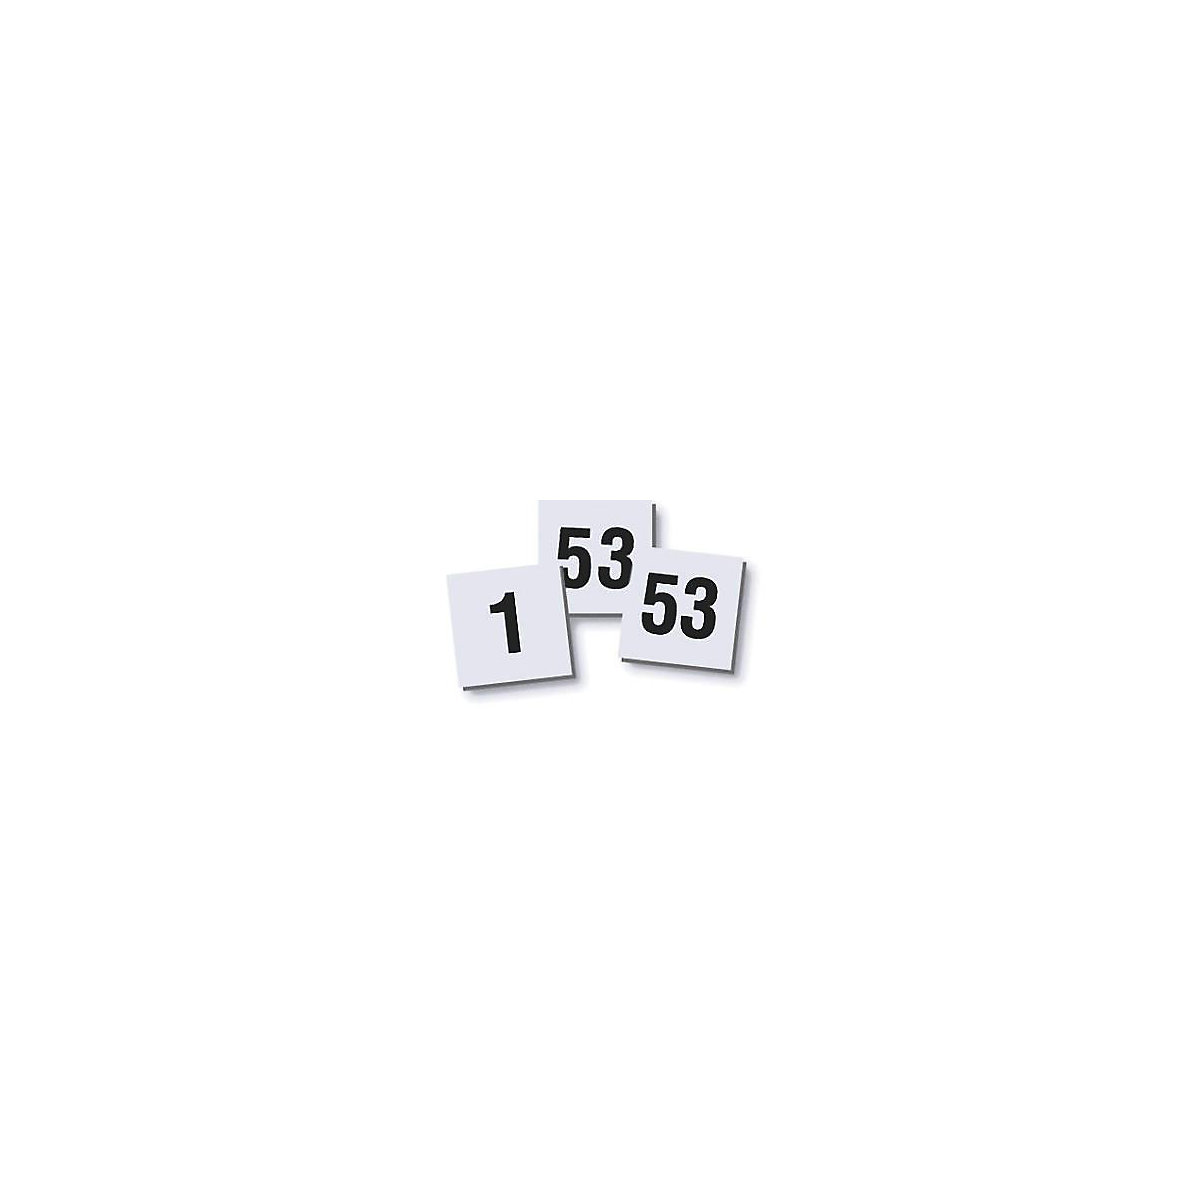 Set di calamite con numero – magnetoplan, 10 x 10 mm, conf. da 2 pz., numeri 1 – 53-3